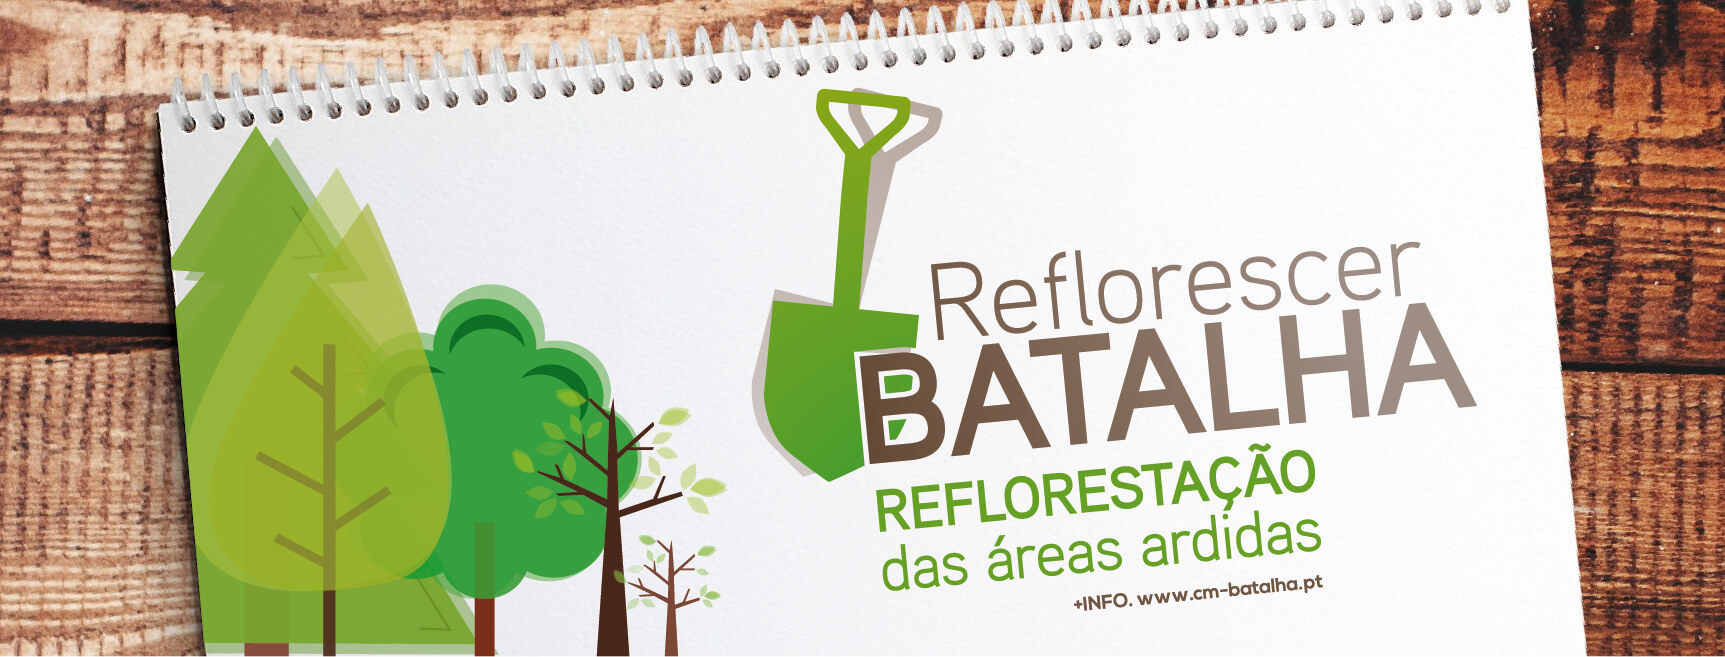 Campanha de reflorestação - “Reflorescer Batalha”